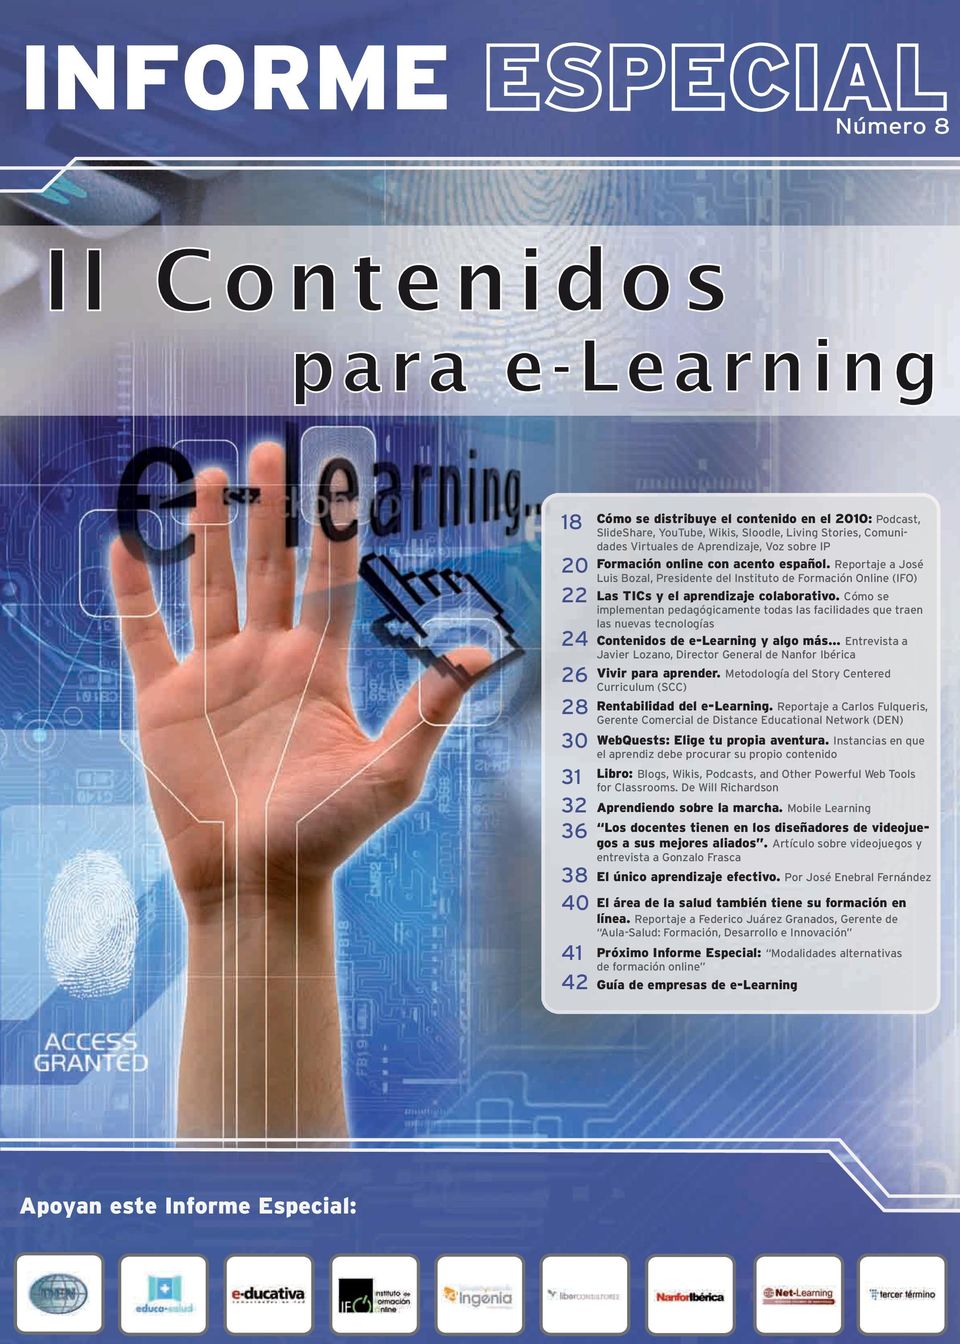 Reportaje a José Luis Bozal, Presidente del Instituto de Formación Online (IFO) Las TICs y el aprendizaje colaborativo.